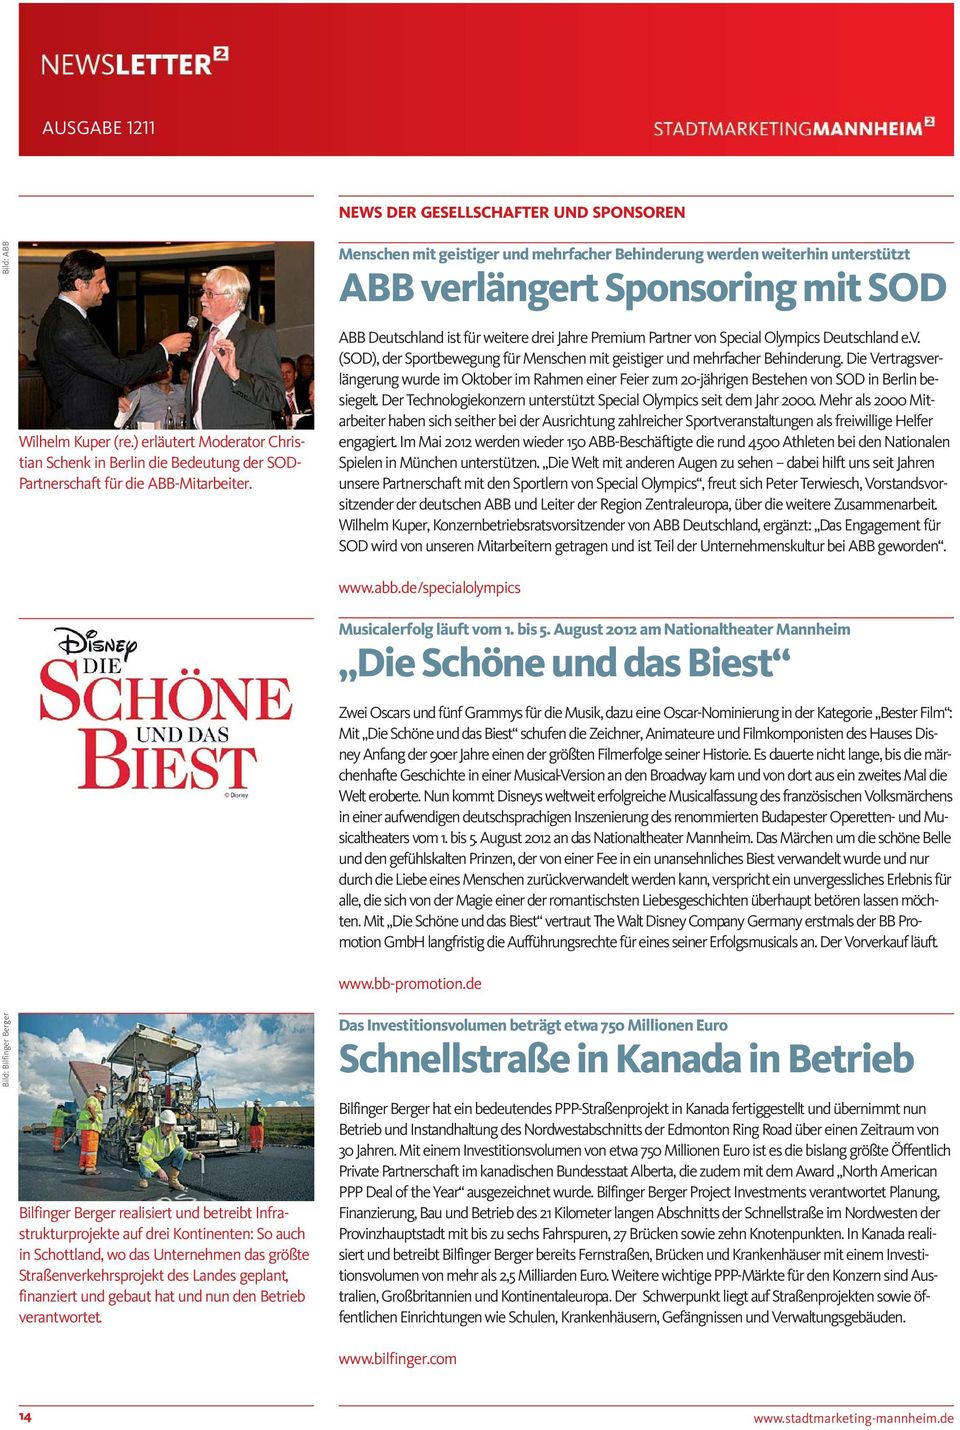 ABB Deutschland ist für weitere drei Jahre Premium Partner von Special Olympics Deutschland e.v. (SOD), der Sportbewegung für Menschen mit geistiger und mehrfacher Behinderung.